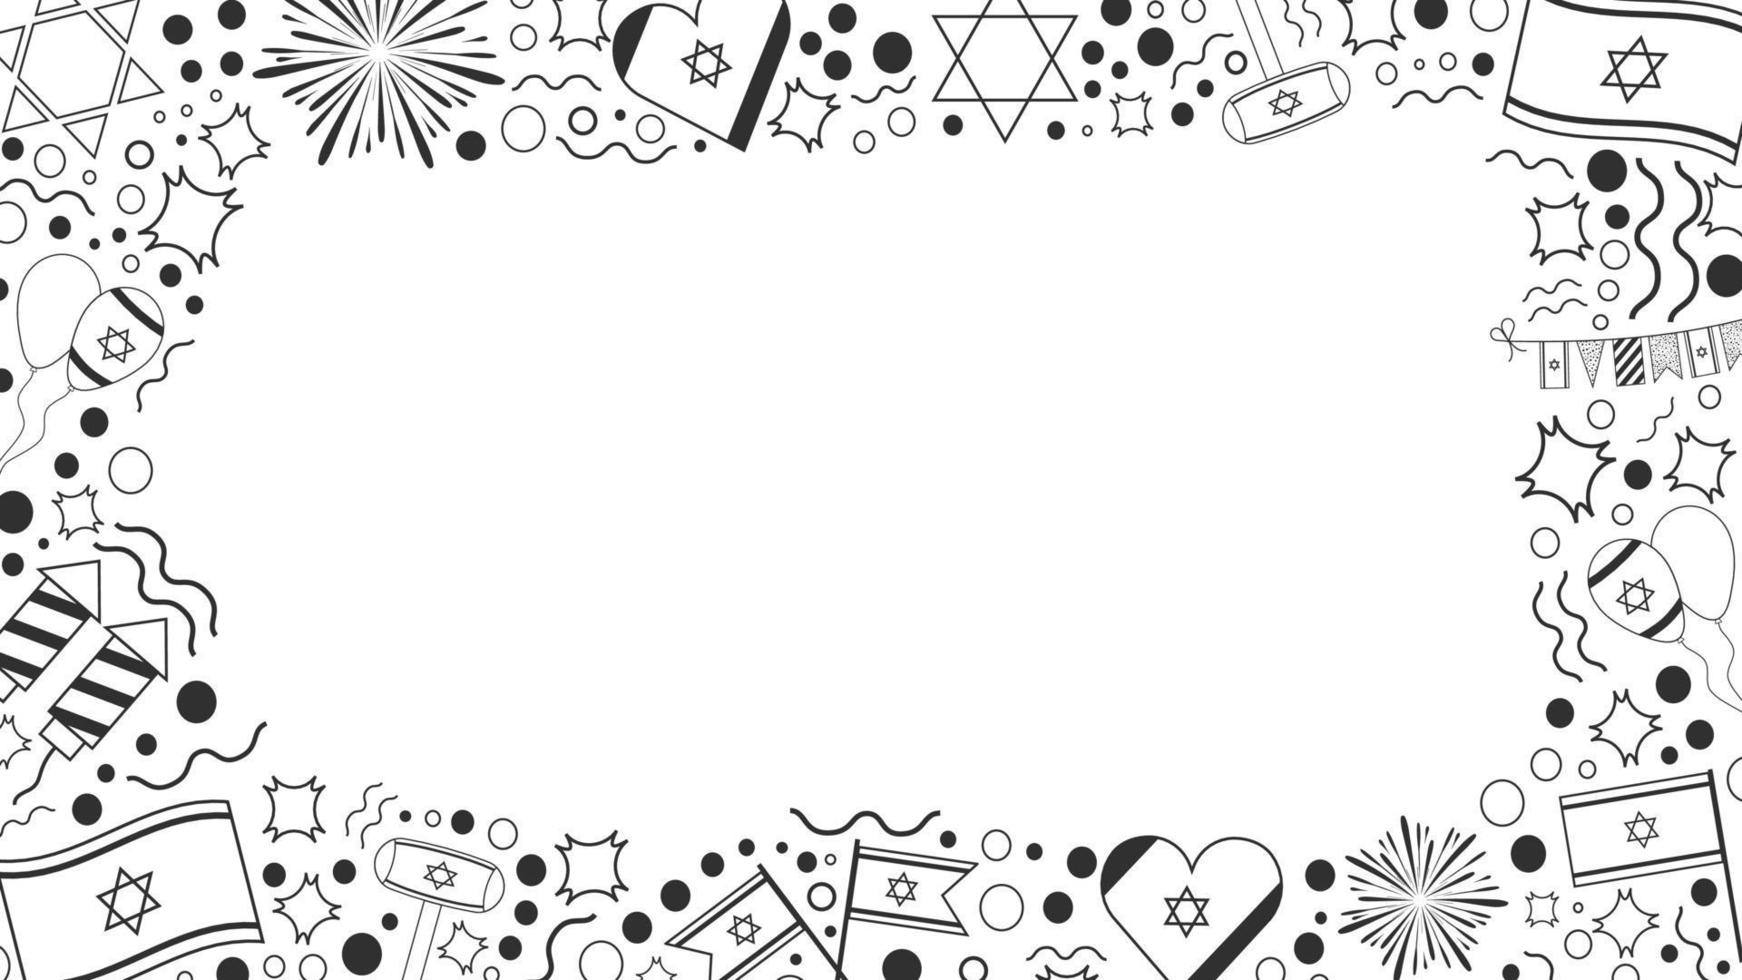 marco con iconos de línea fina negra de diseño plano de vacaciones del día de la independencia de israel vector